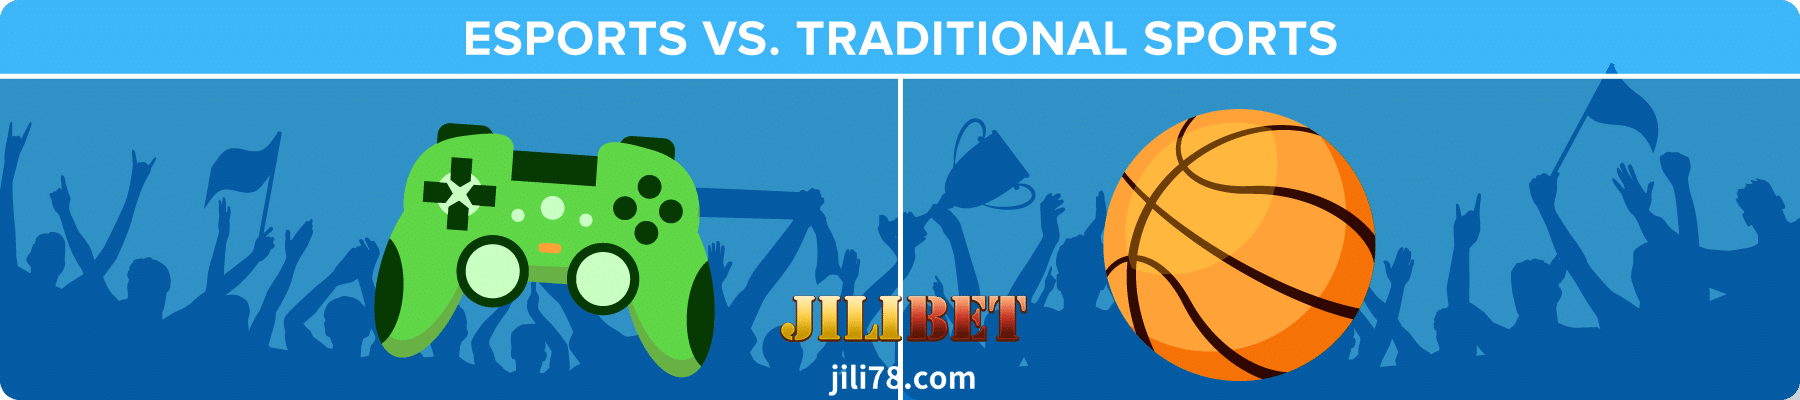 JILIBET Online-Esports2